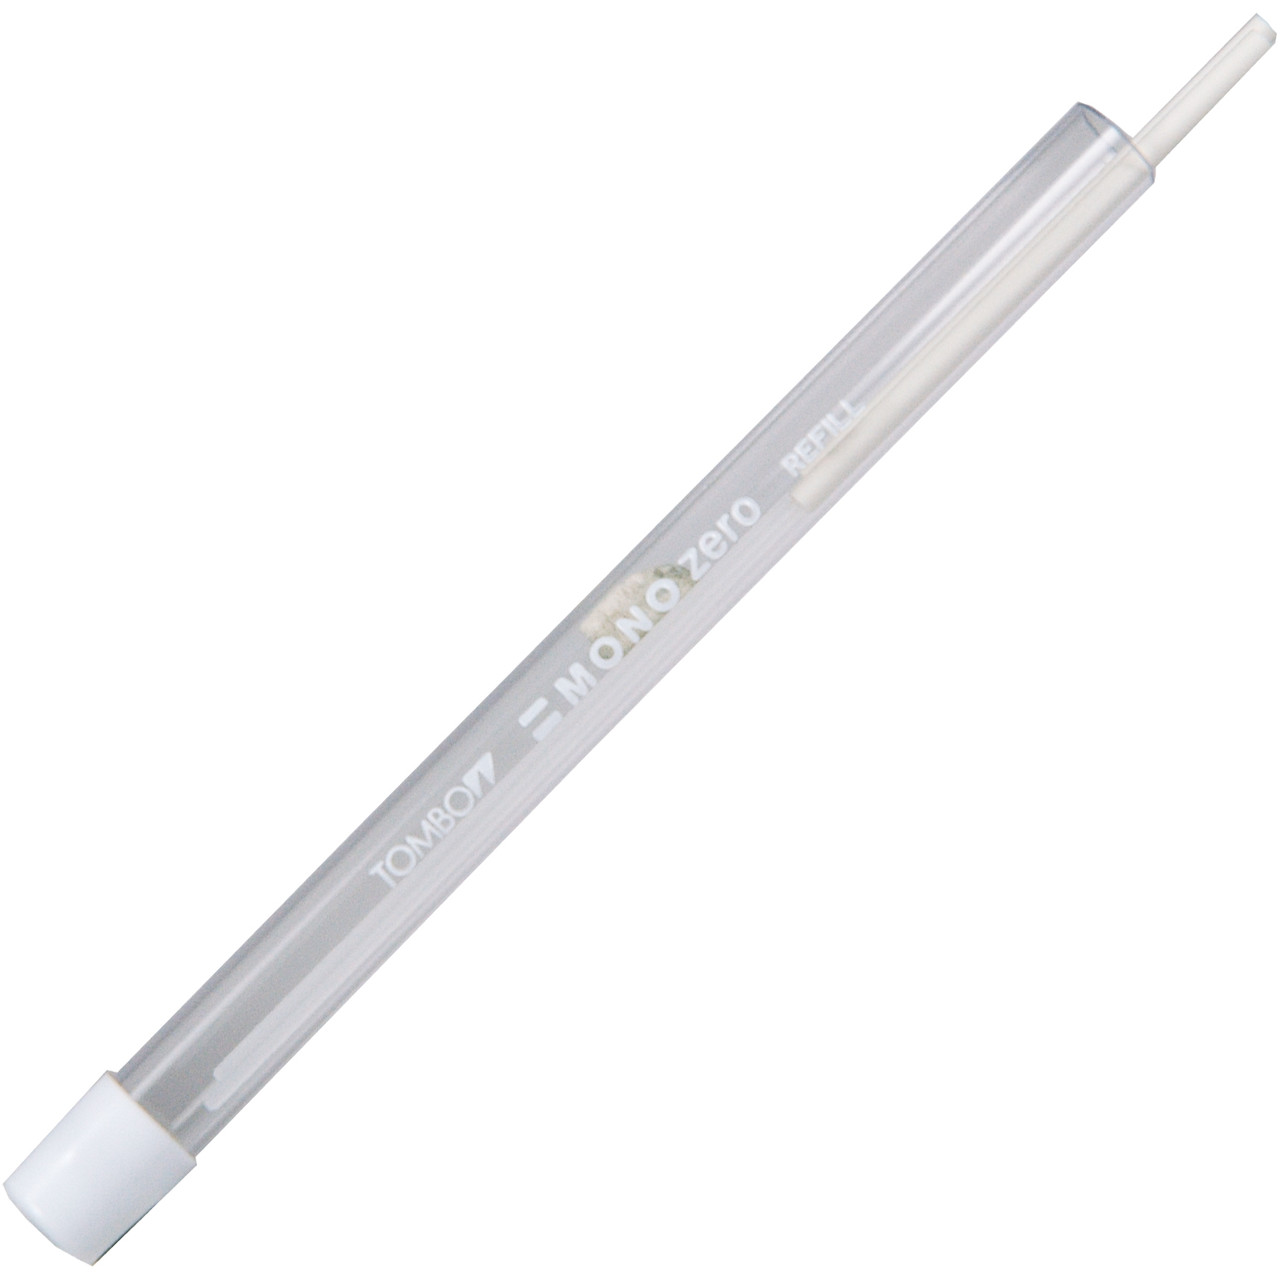 Tombow Mono 57307 Zero Eraser Refill, Round 2.3 mm Diameter, Tube of 2  Erasers